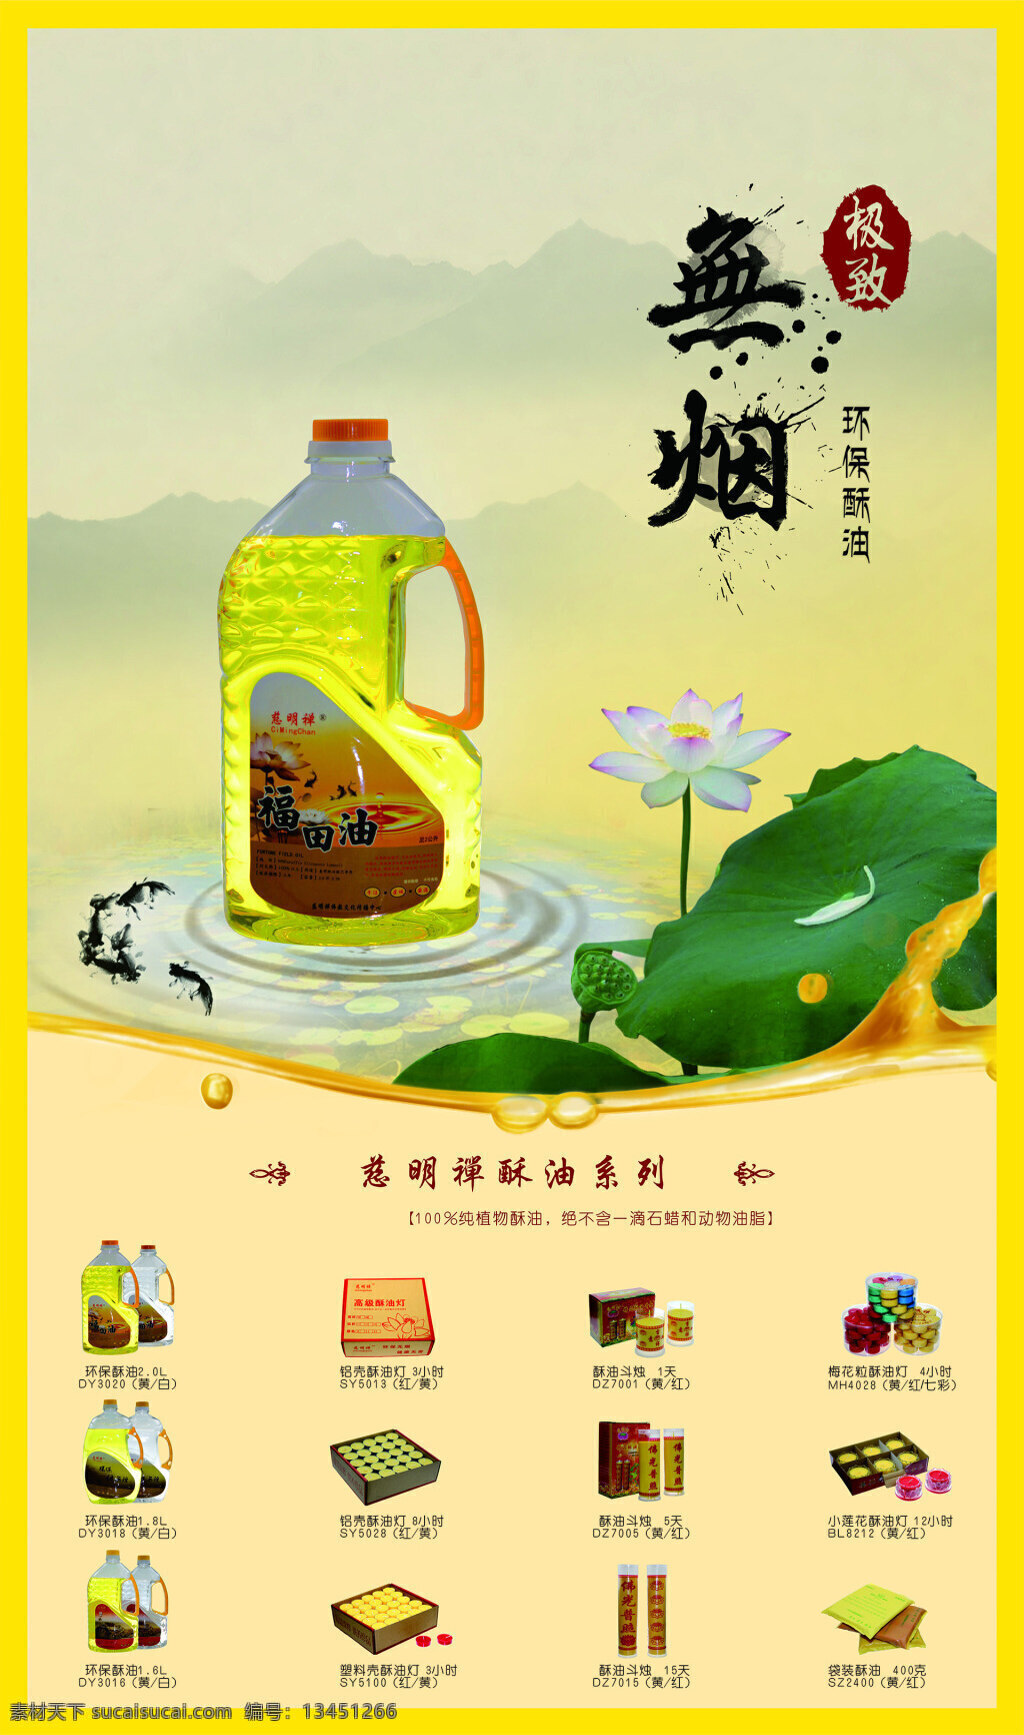 慈明 禅 展会 产品 广告 海报 产品展示 展会广告 黄色